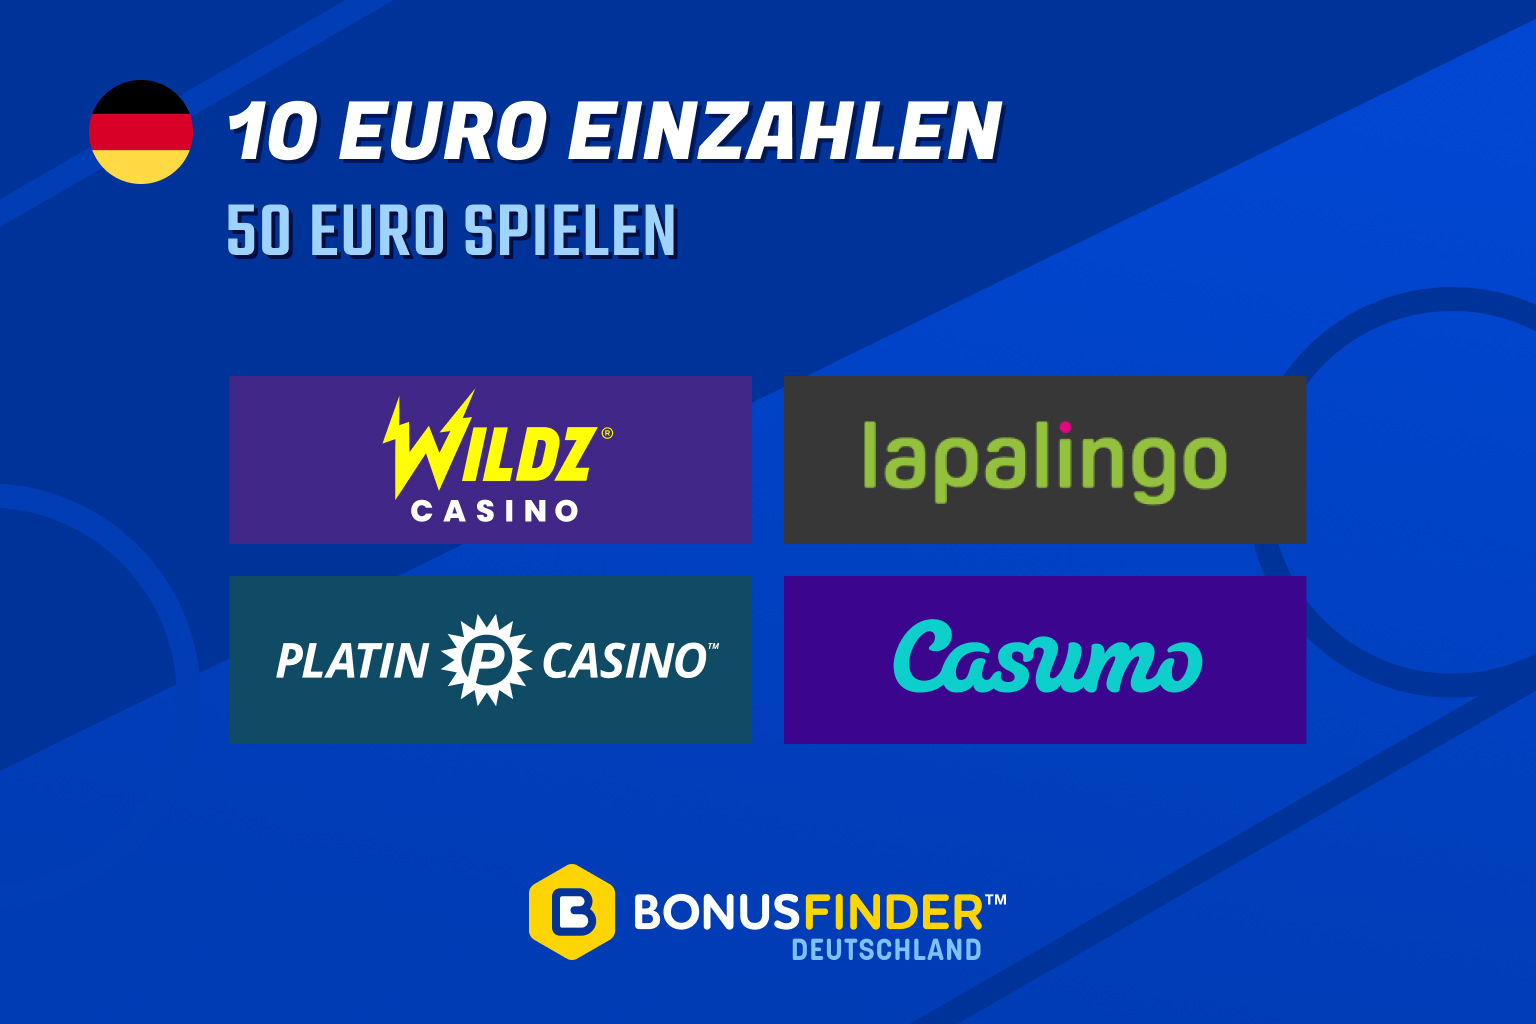 10 euro einzahlen 50 euro spielen casino 2021